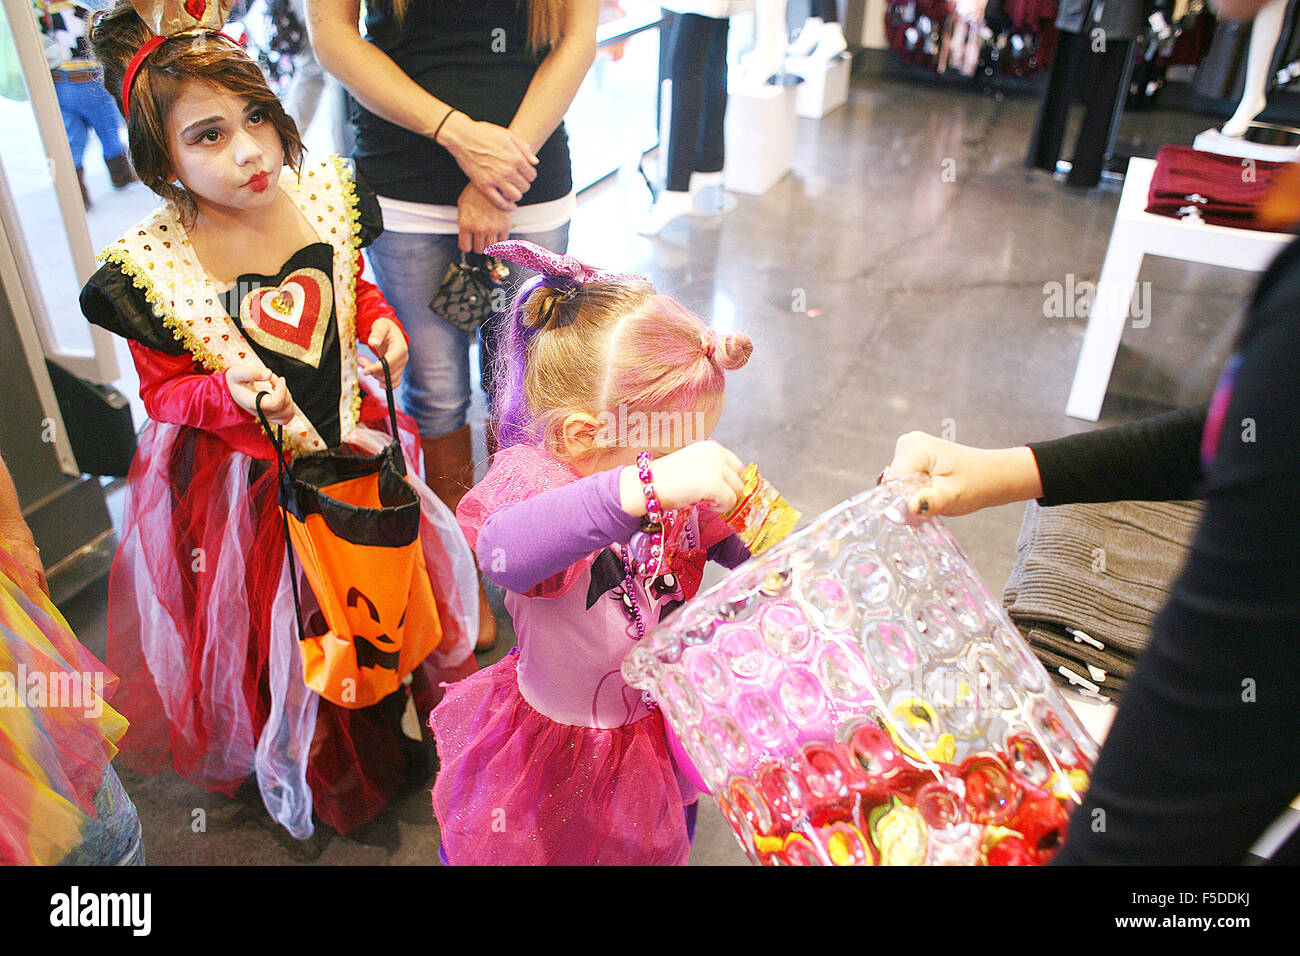 Octubre 31, 2015 - Napa, CA, EE.UU. - vestidos como la reina de corazones,  Lili Smith, espera su turno como su hermana Haylee recoge un pedazo de  caramelo durante el Spooktacular Trick